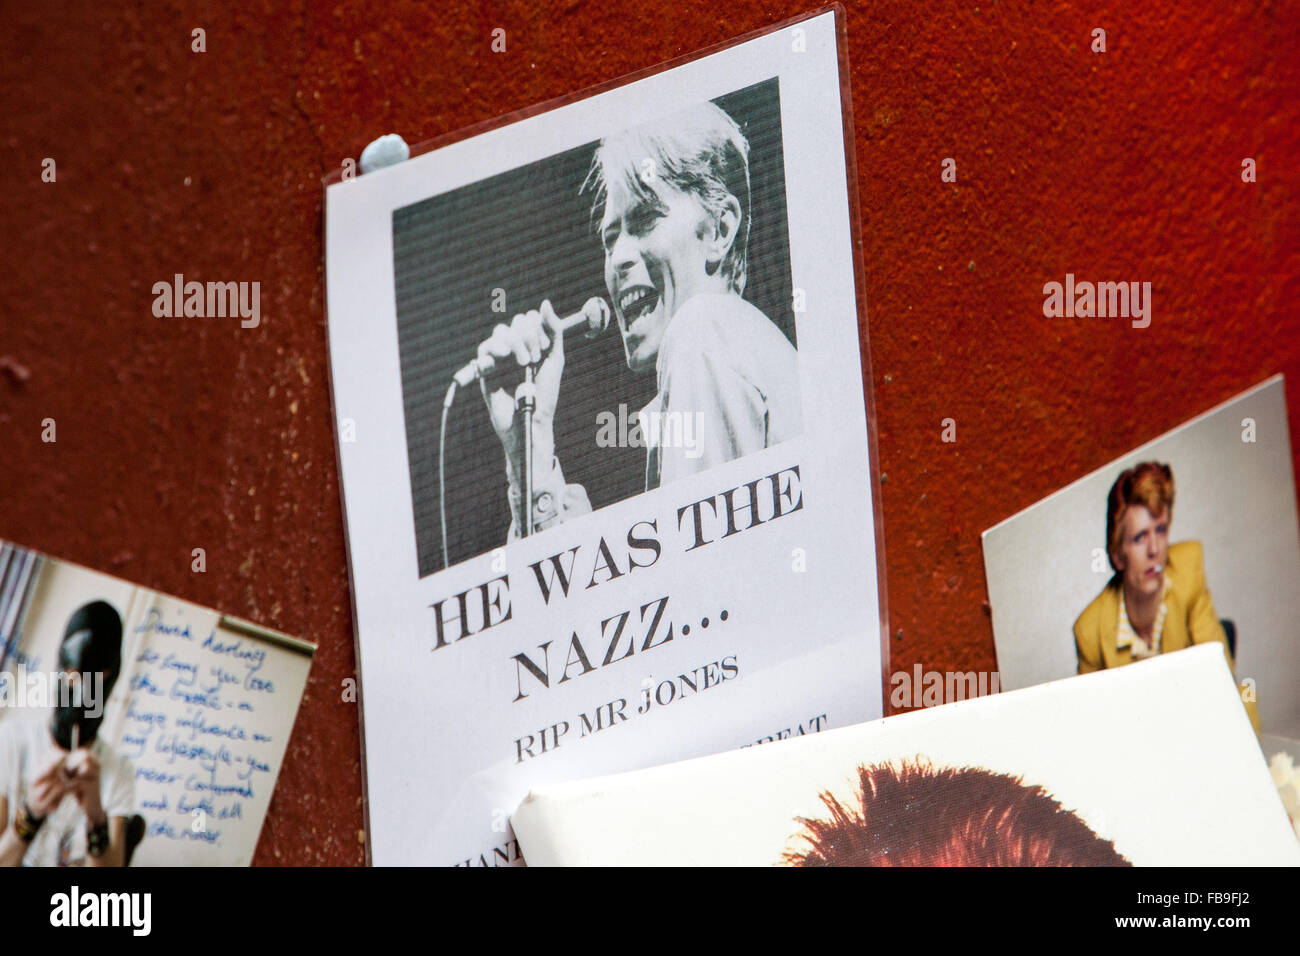 Ehrungen und Nachrichten von Fans liegen unter einem Wandgemälde der späten David Bowie Brixton u-Bahnstation, London, UK. © Martyn Wheatley/Alamy Live News Stockfoto